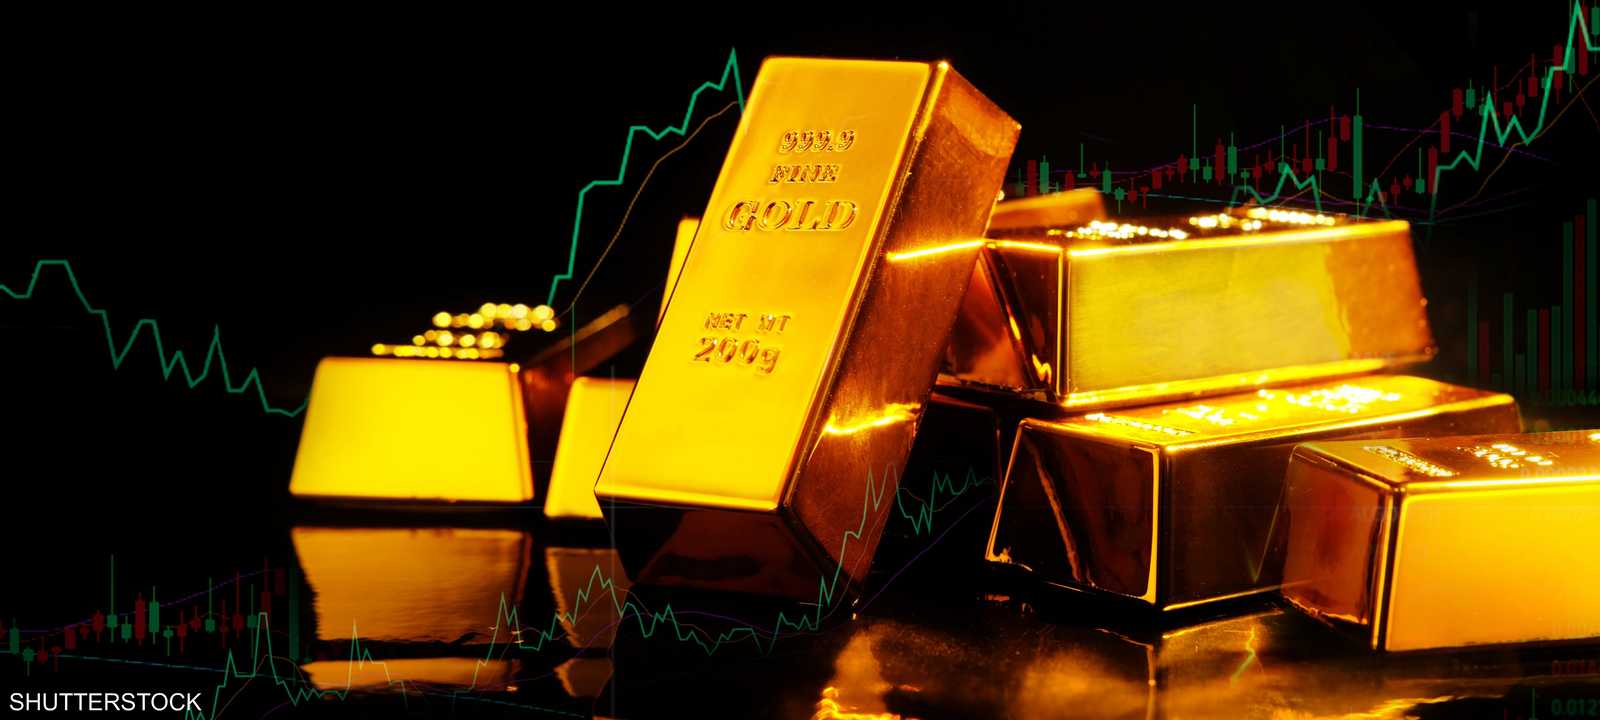 عوامل رئيسية تحدد اتجاهات أسعار الذهب.. ما هي